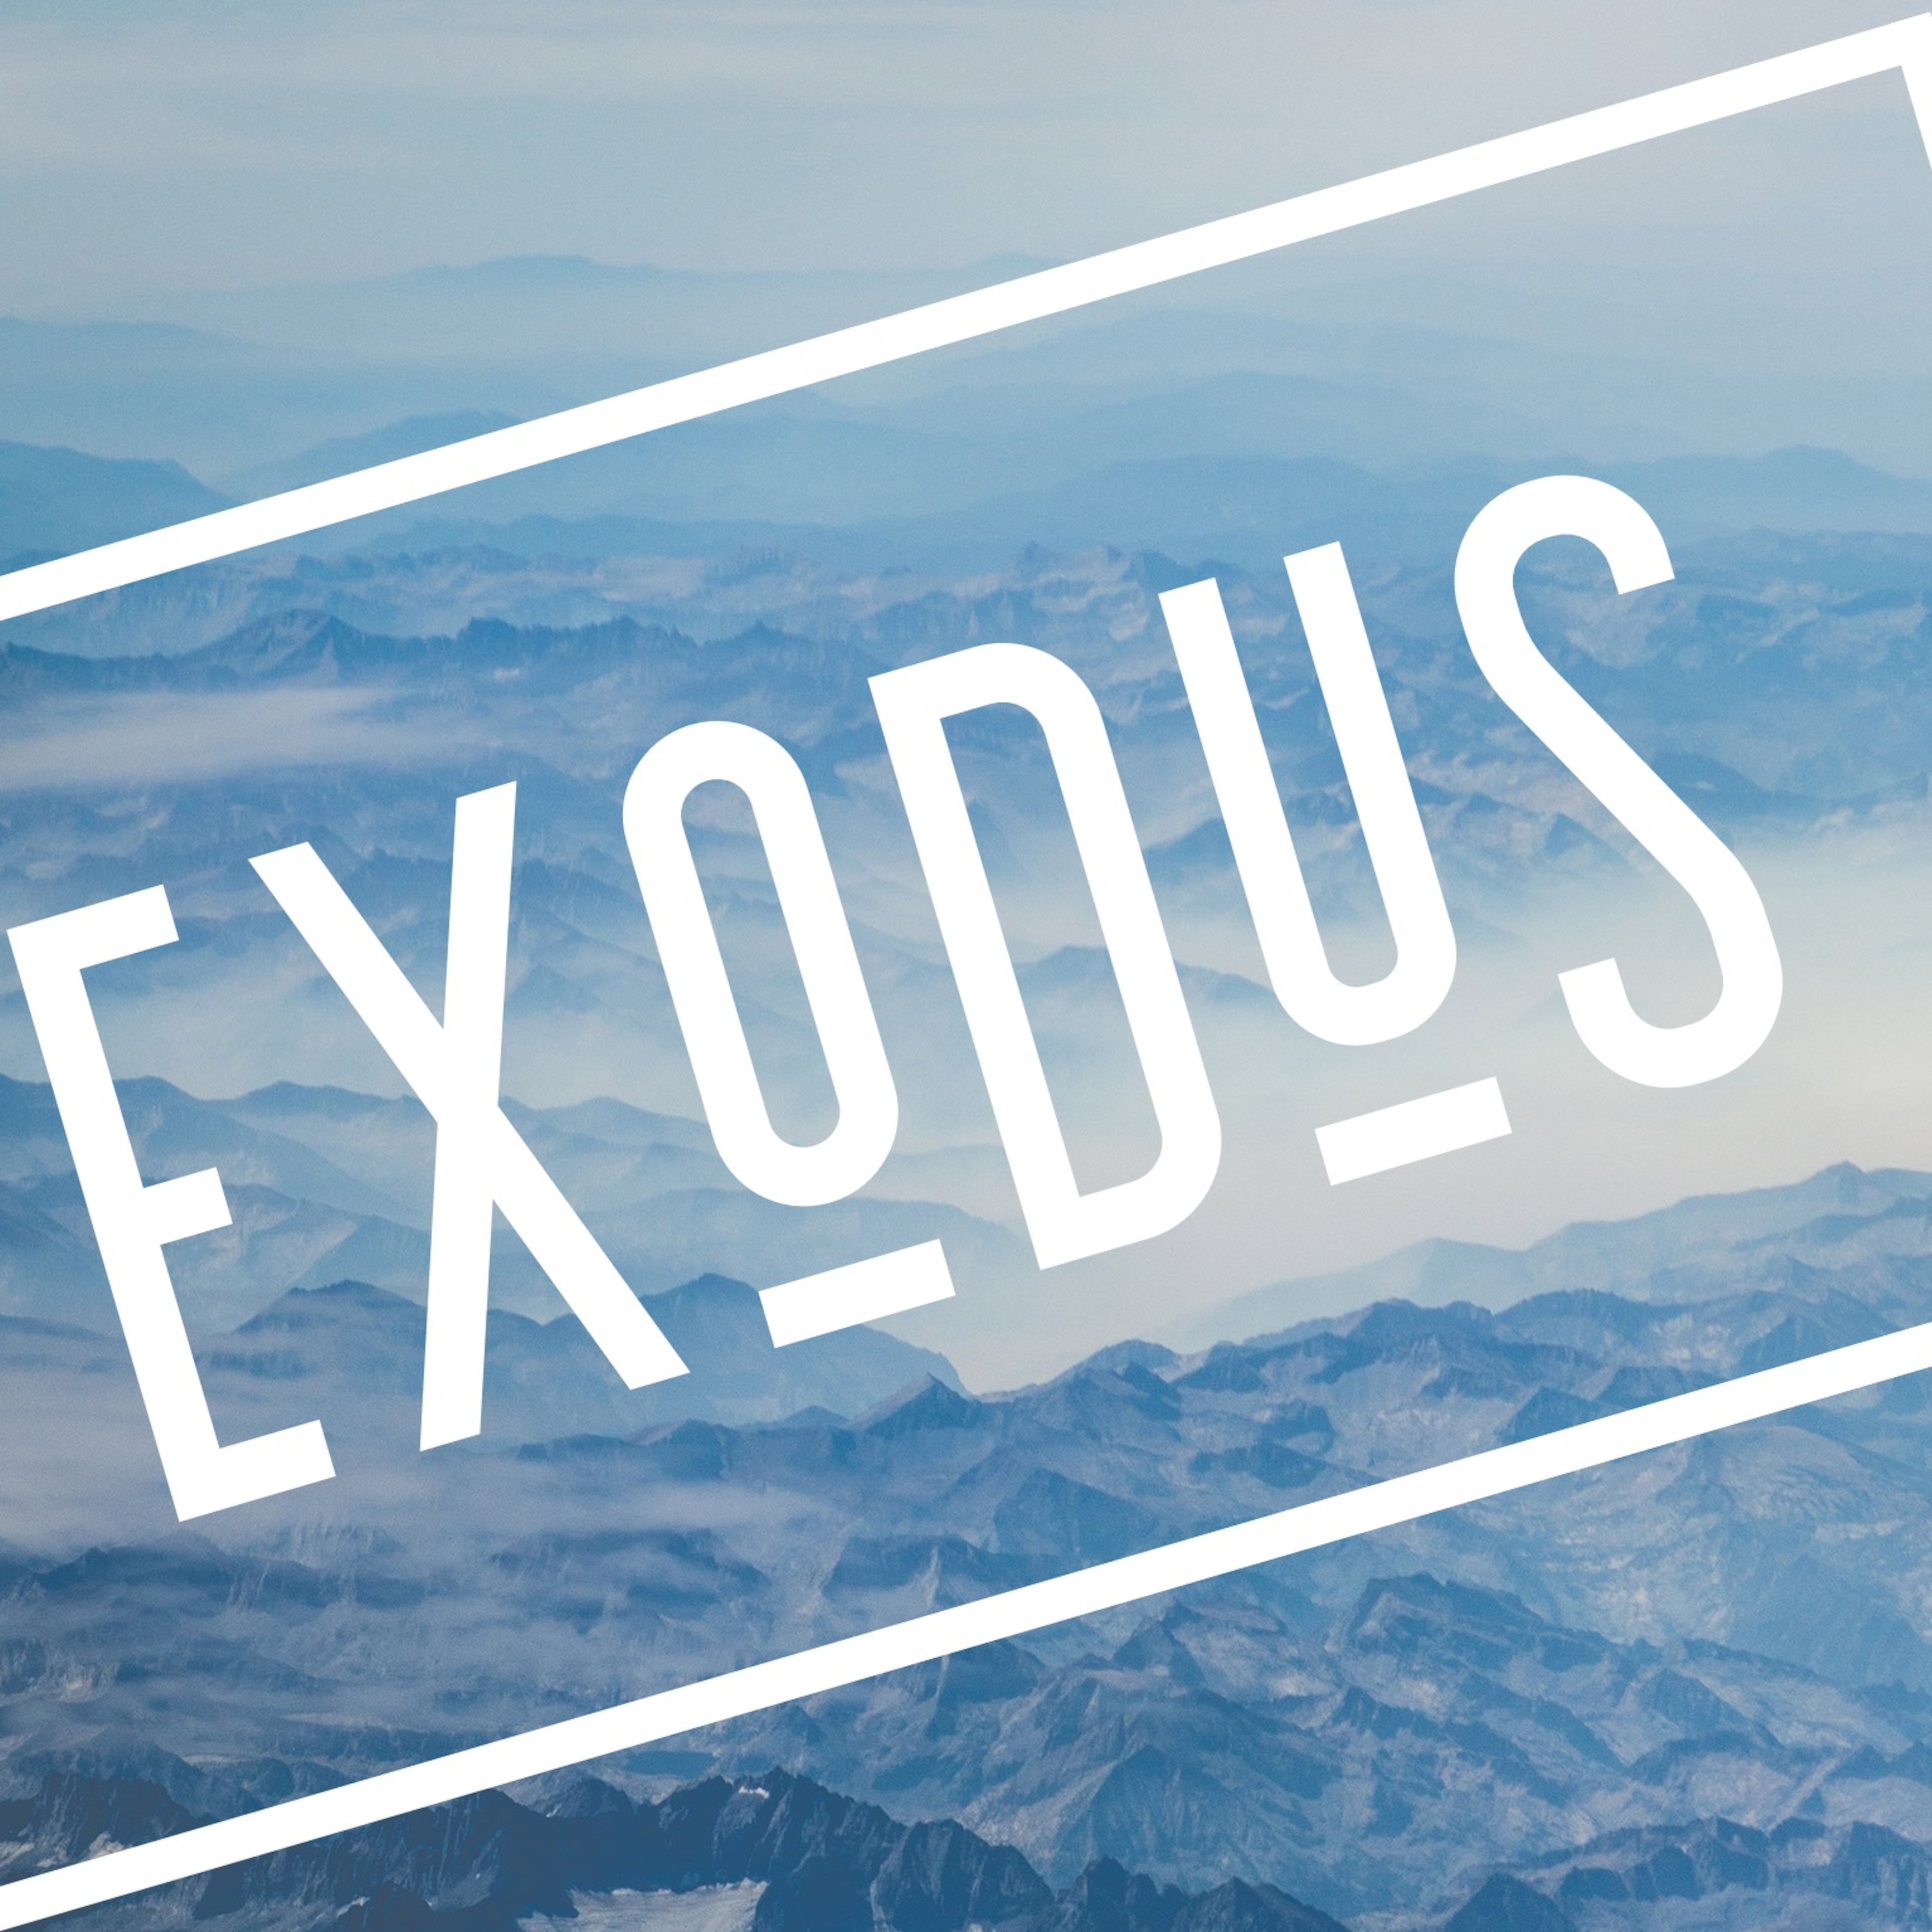 Wilderness Exodus 15-17 Aug.11,2019am